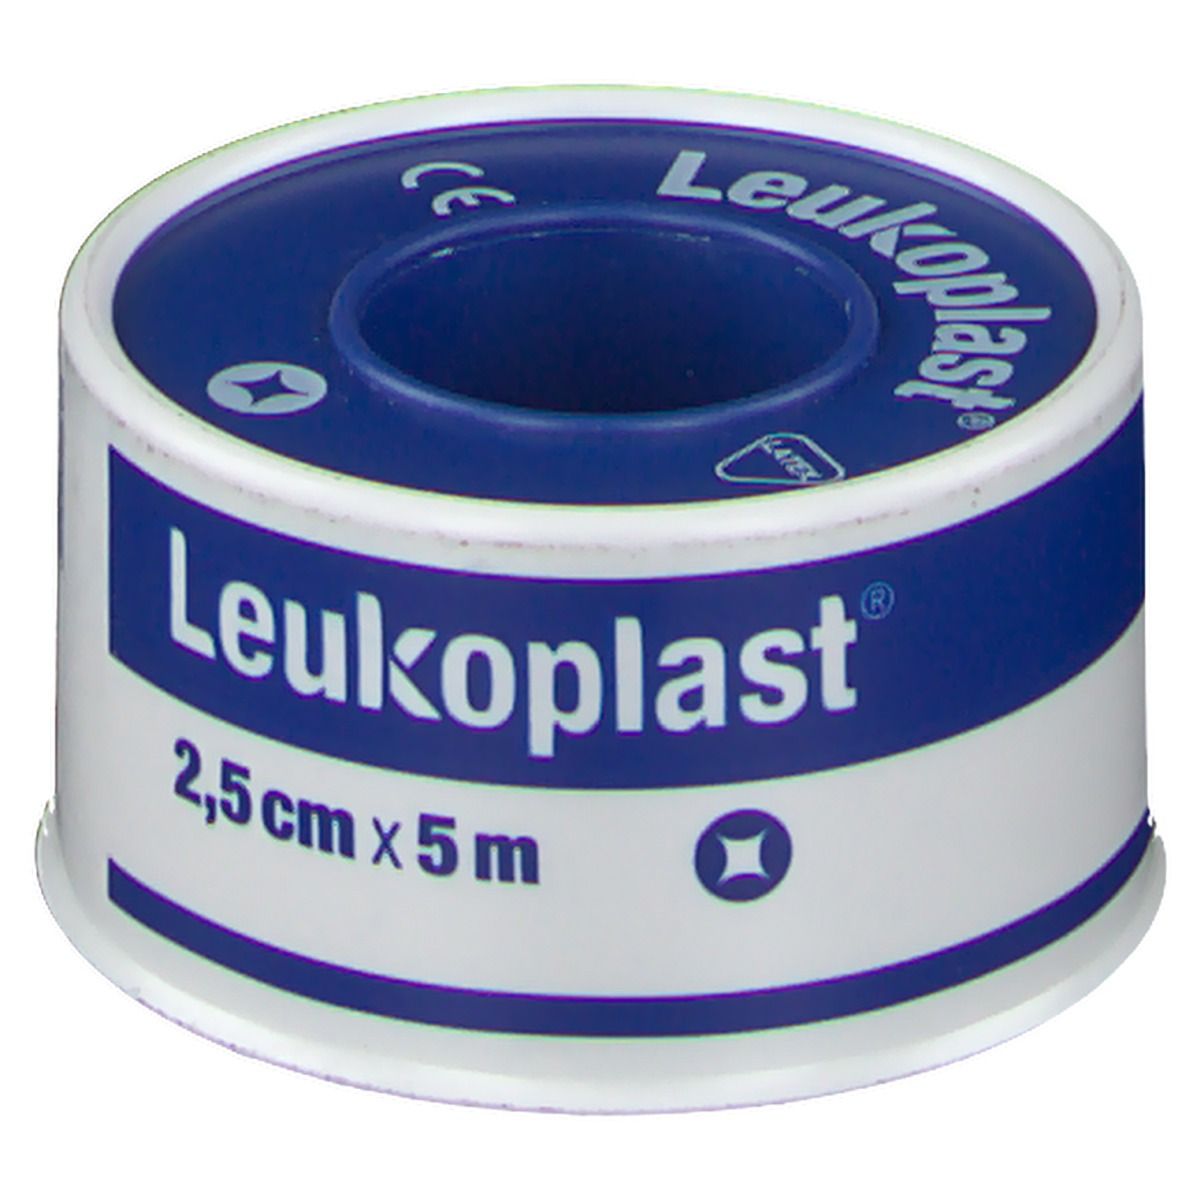 Leukoplast® Waterdicht Deksel 2.5cm x 5m